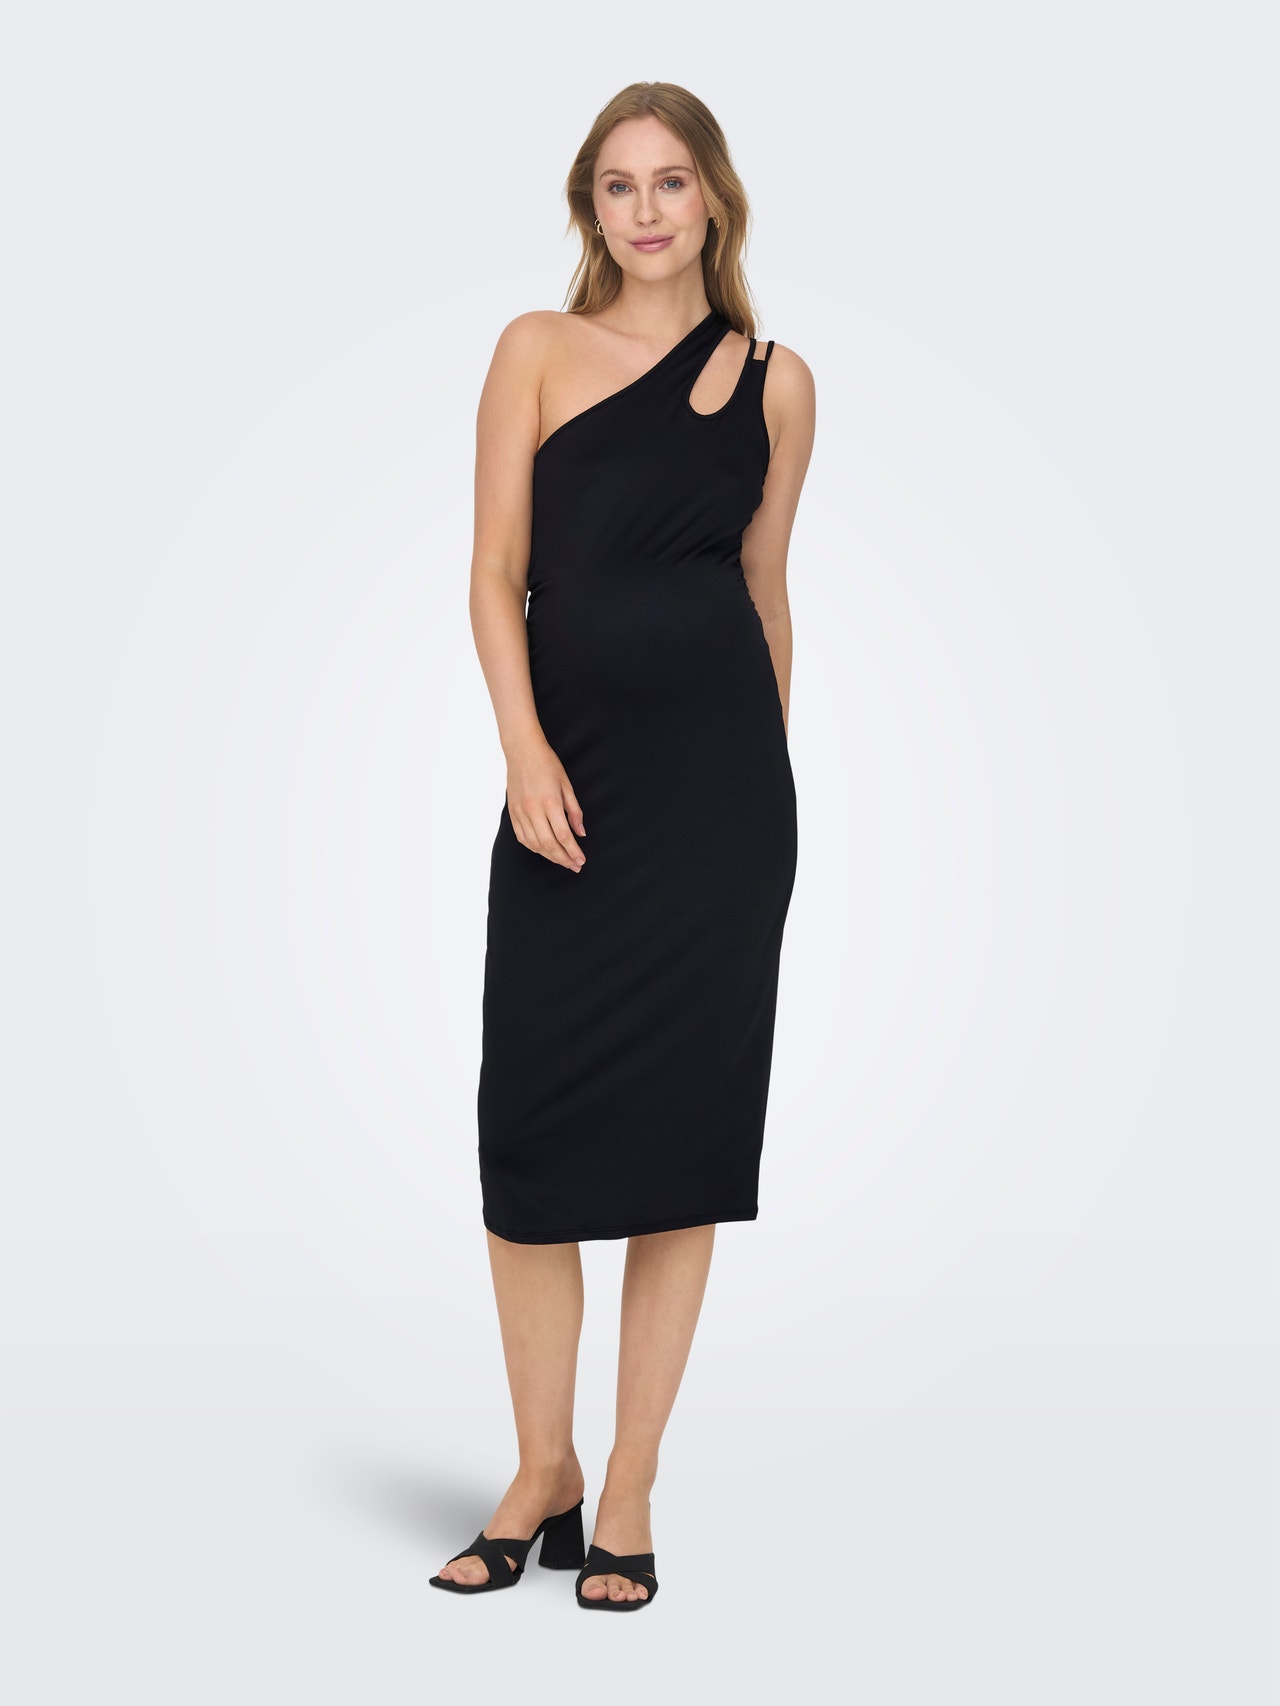 ONLY Normal passform En axel Graviditet Lång klänning -Black - 15302094